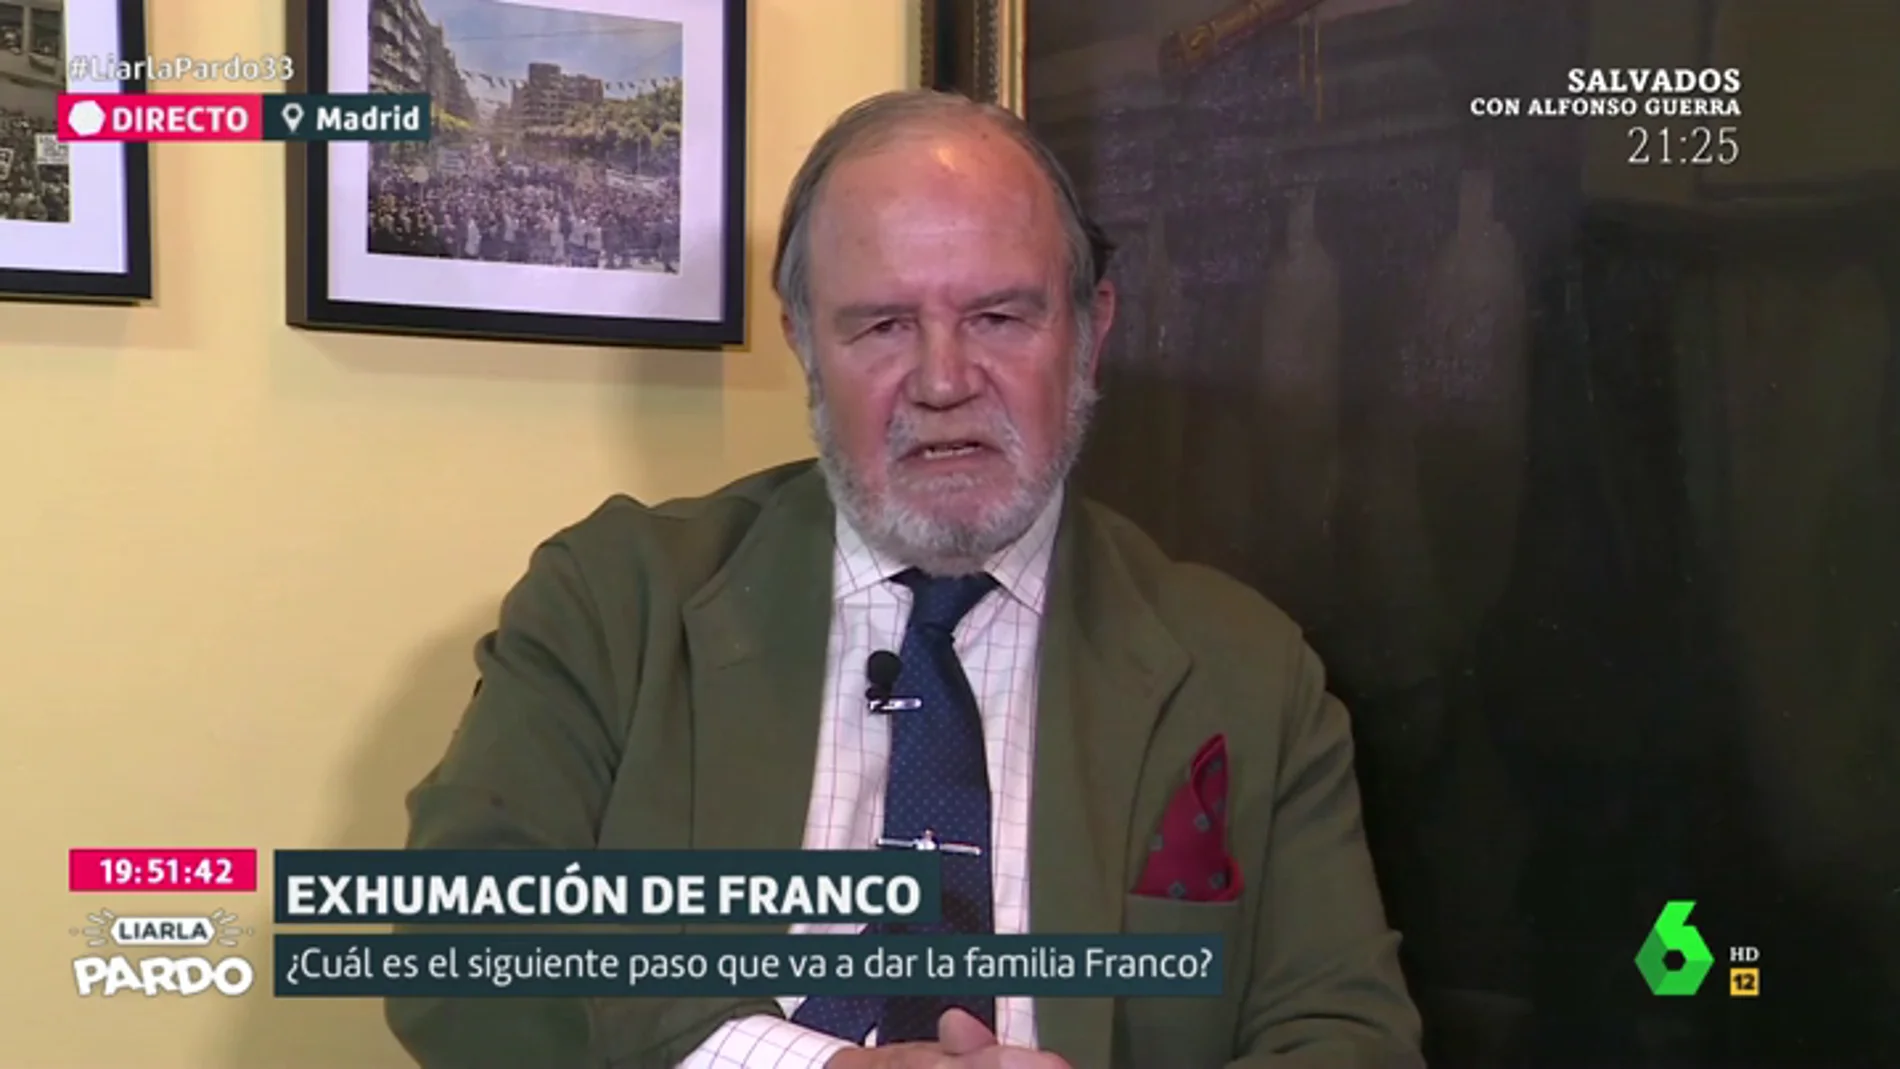 La Fundación Franco: "Los que quieren que Franco vaya a El Pardo son los bares, se forrarían"